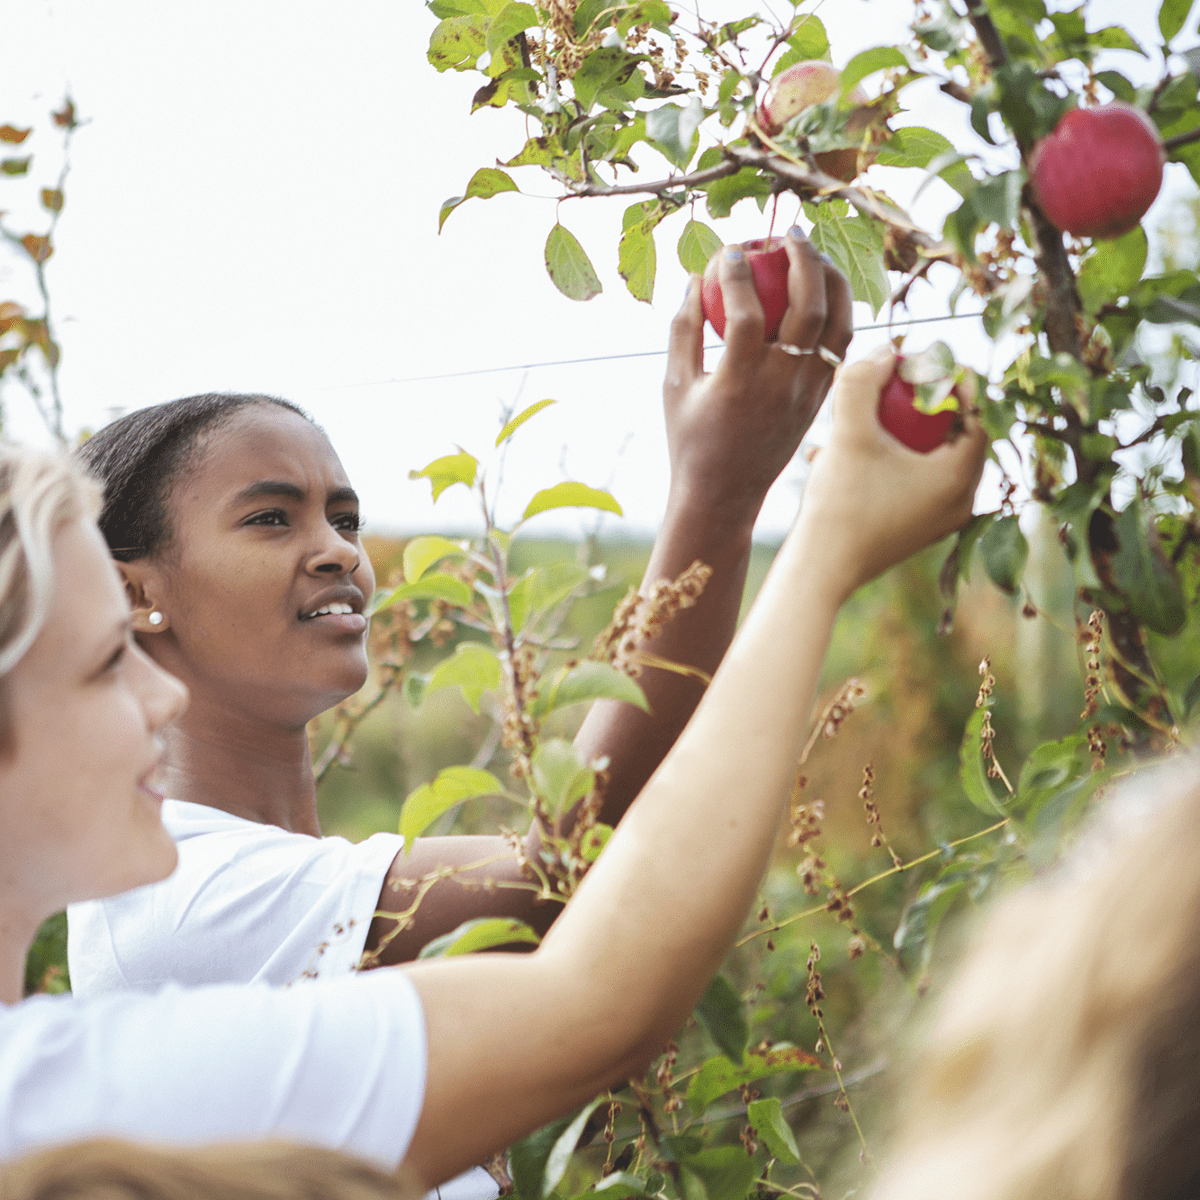 äpplen juleboda gård flera barn äpple fotograf anki blomqvist